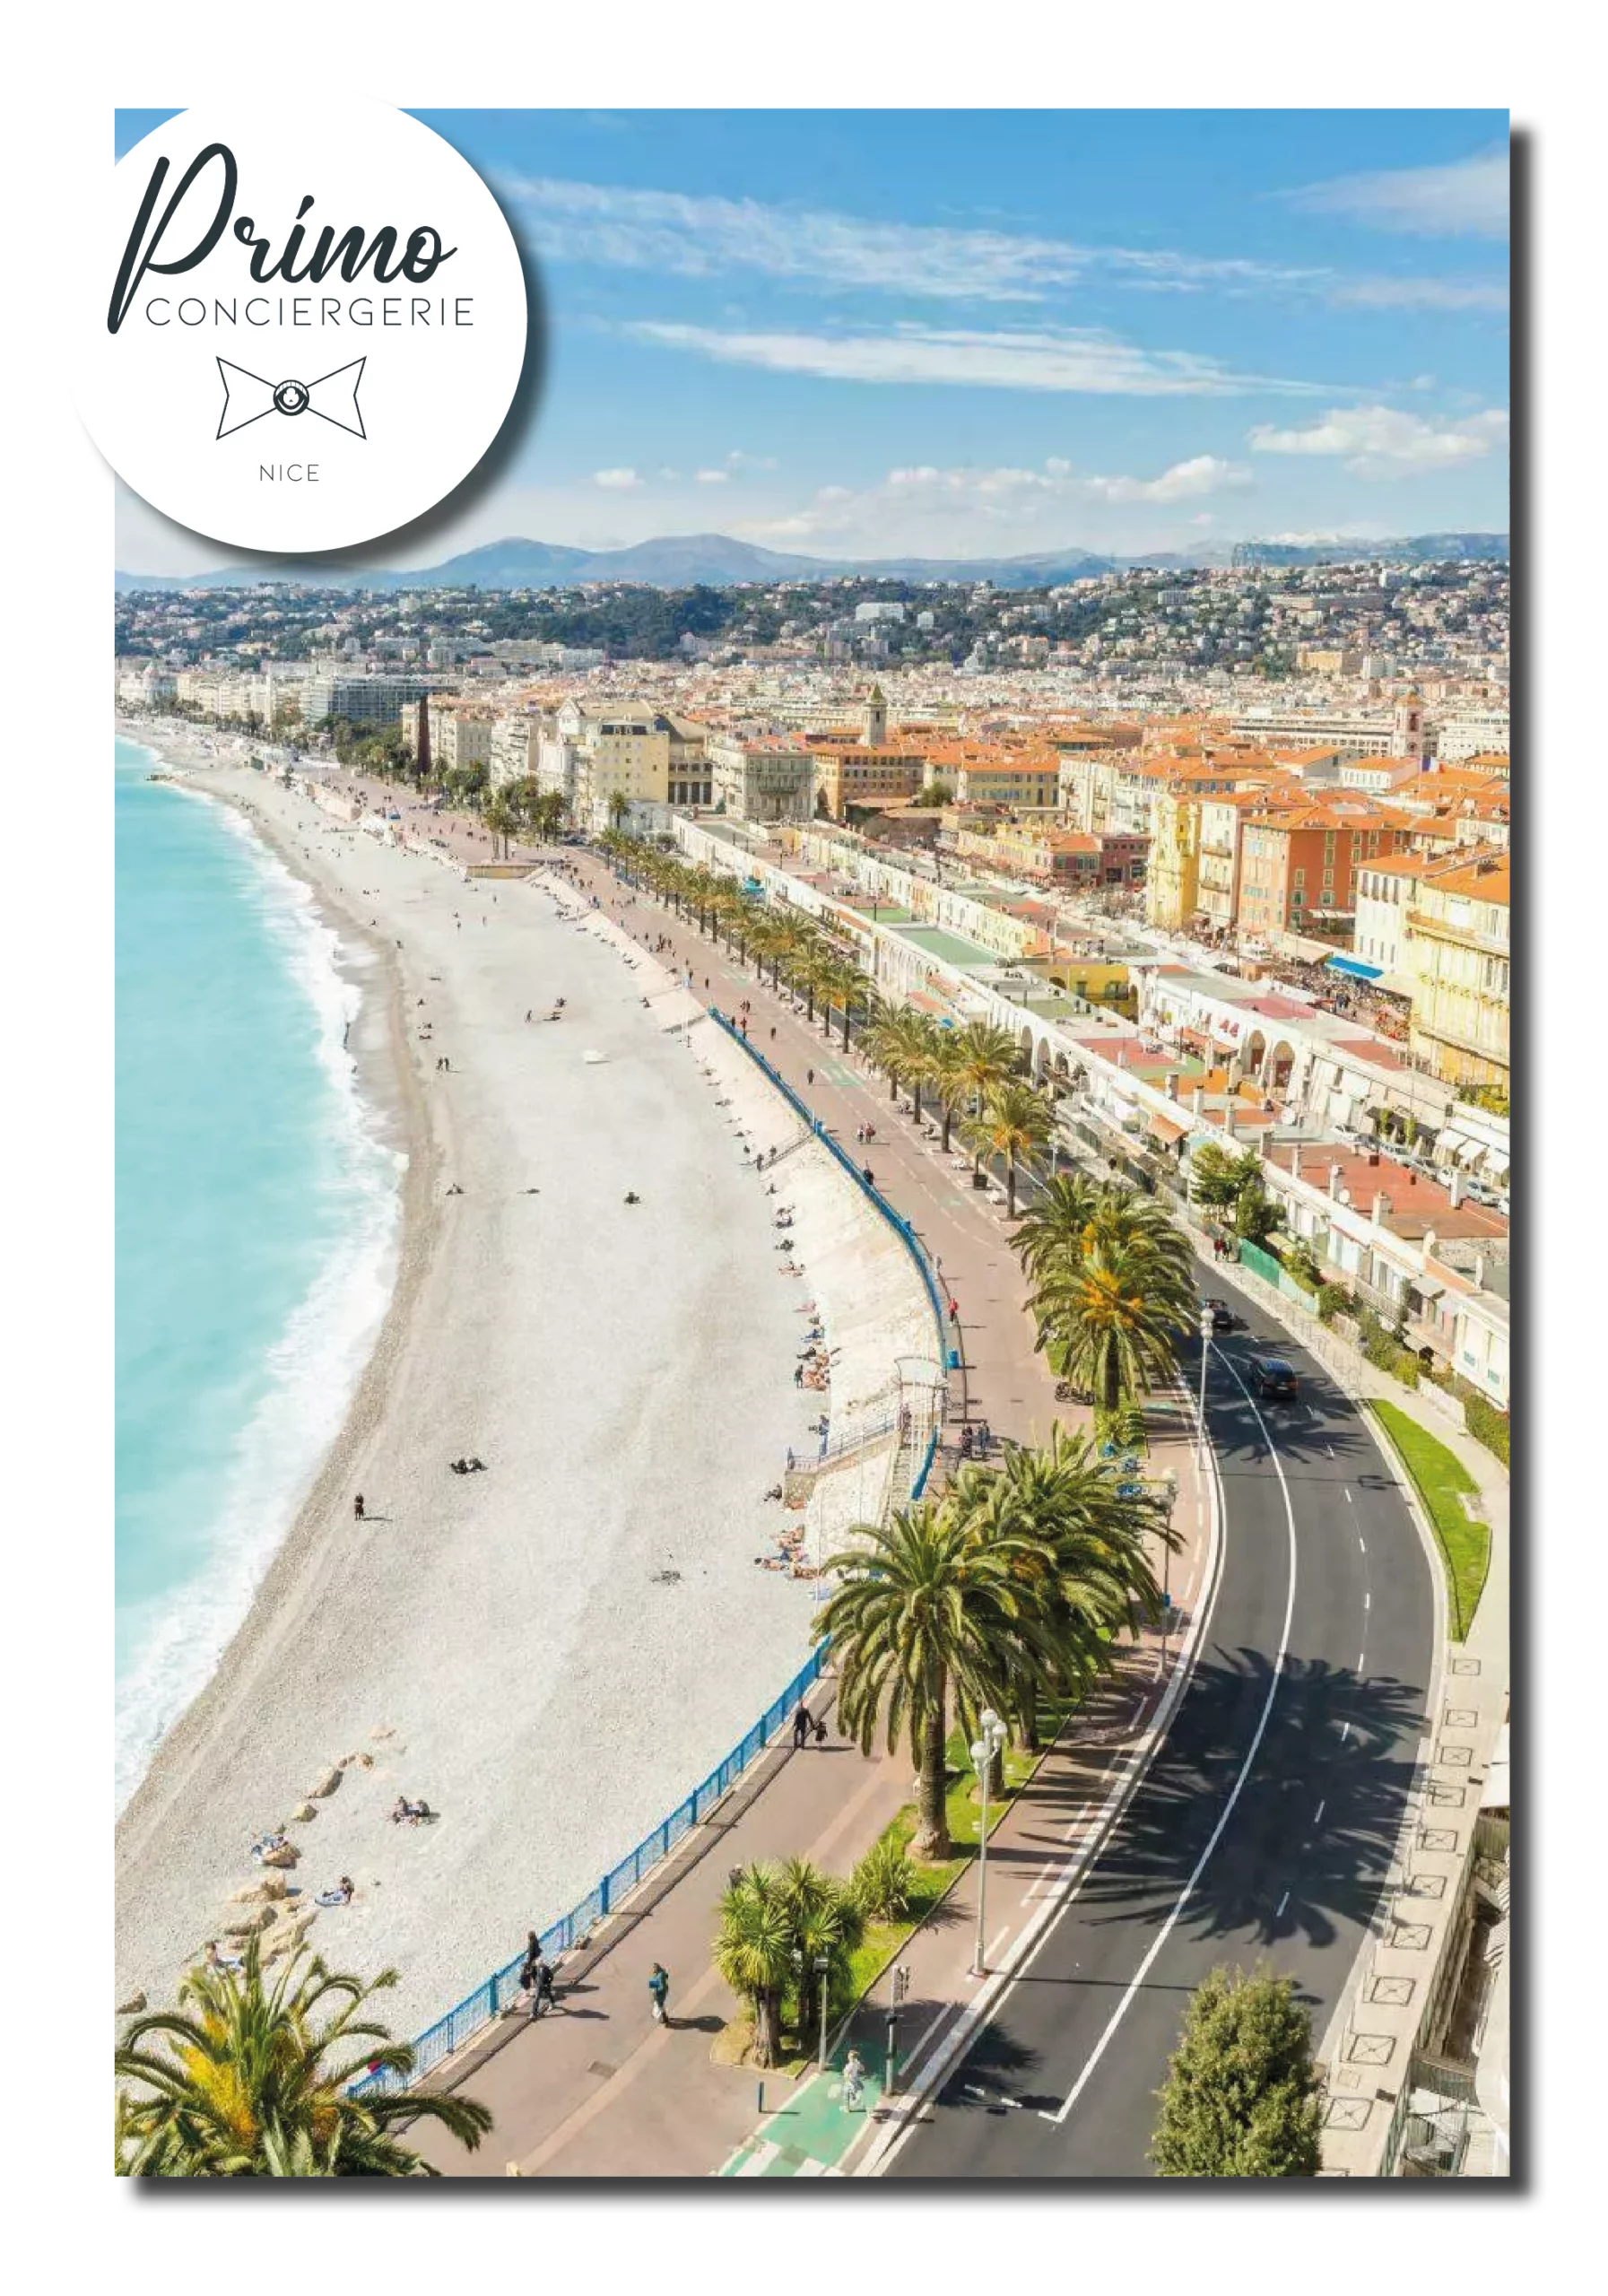 Photographie de la ville de Nice, mettant en valeur les palmiers qui bordent les rues, les plages de sable fin et les immeubles modernes, avec les collines verdoyantes en arrière-plan.